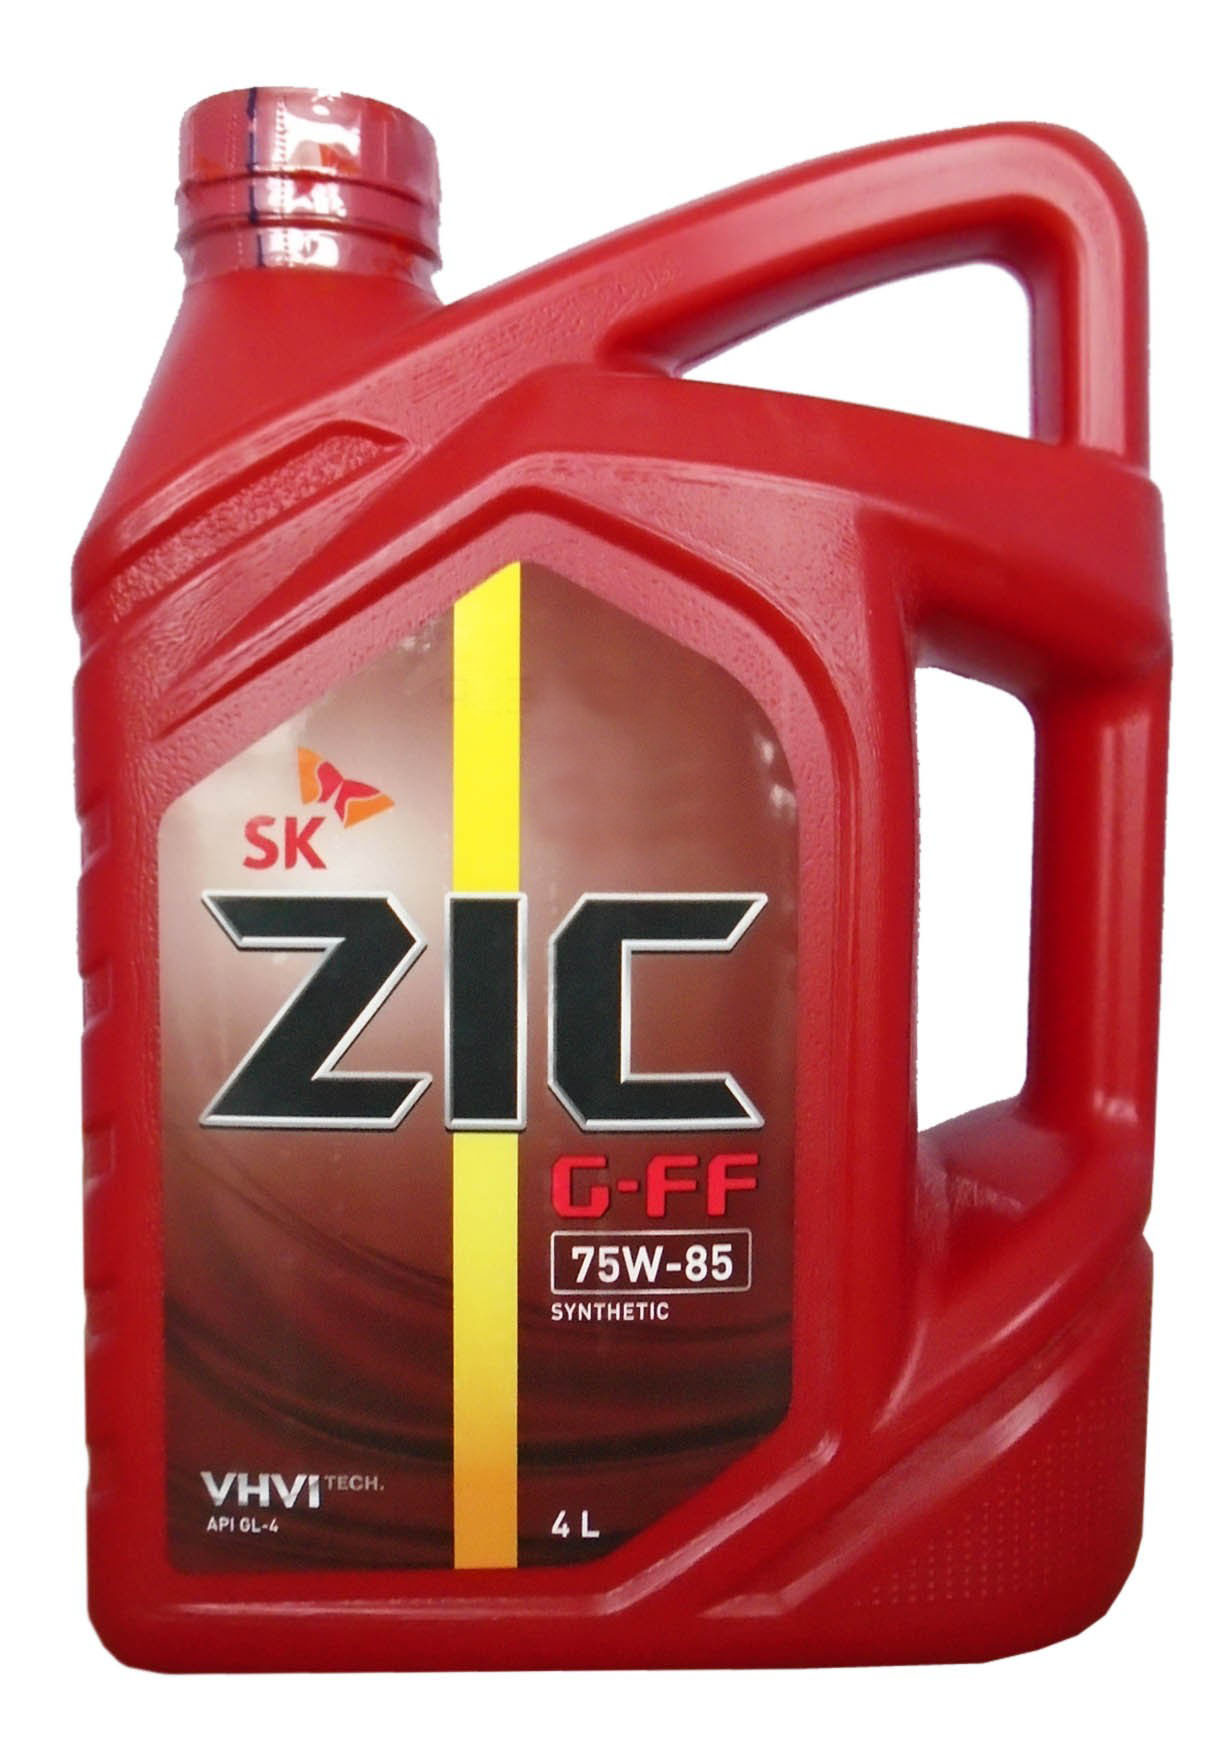 Купить трансмиссионное масло на озоне. ZIC GFT 75w-90 gl-4 4л. ZIC G-FF 75w-85 gl-4. ZIC sp3 артикул 4л. Трансмиссионное масло ZIC G-FF 75w-85.